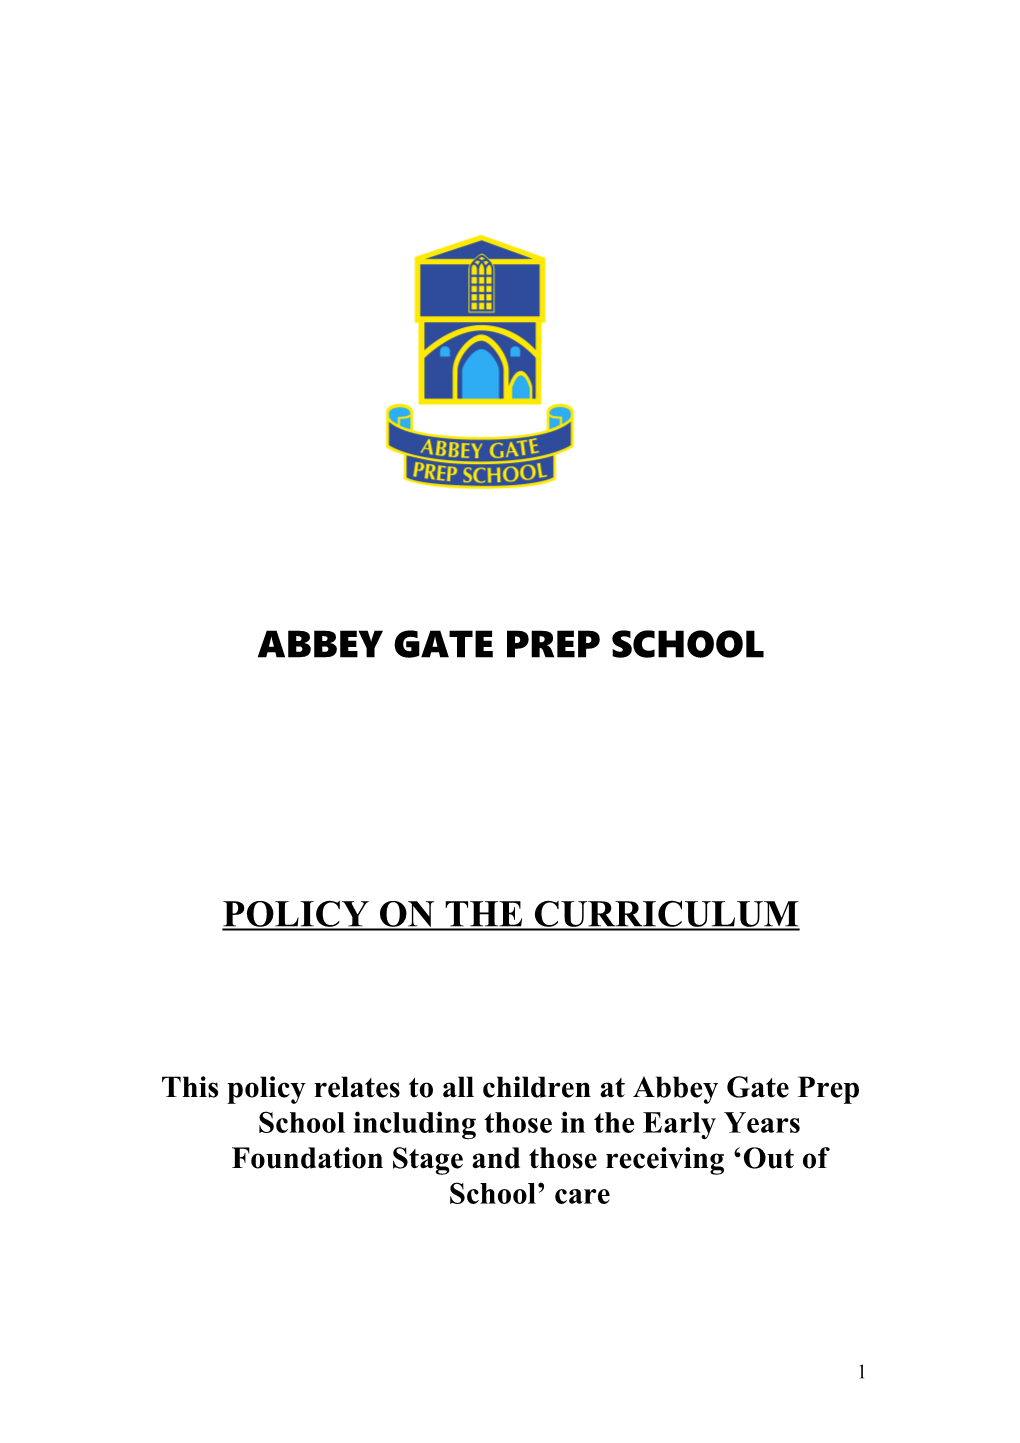 Abbey Gate School